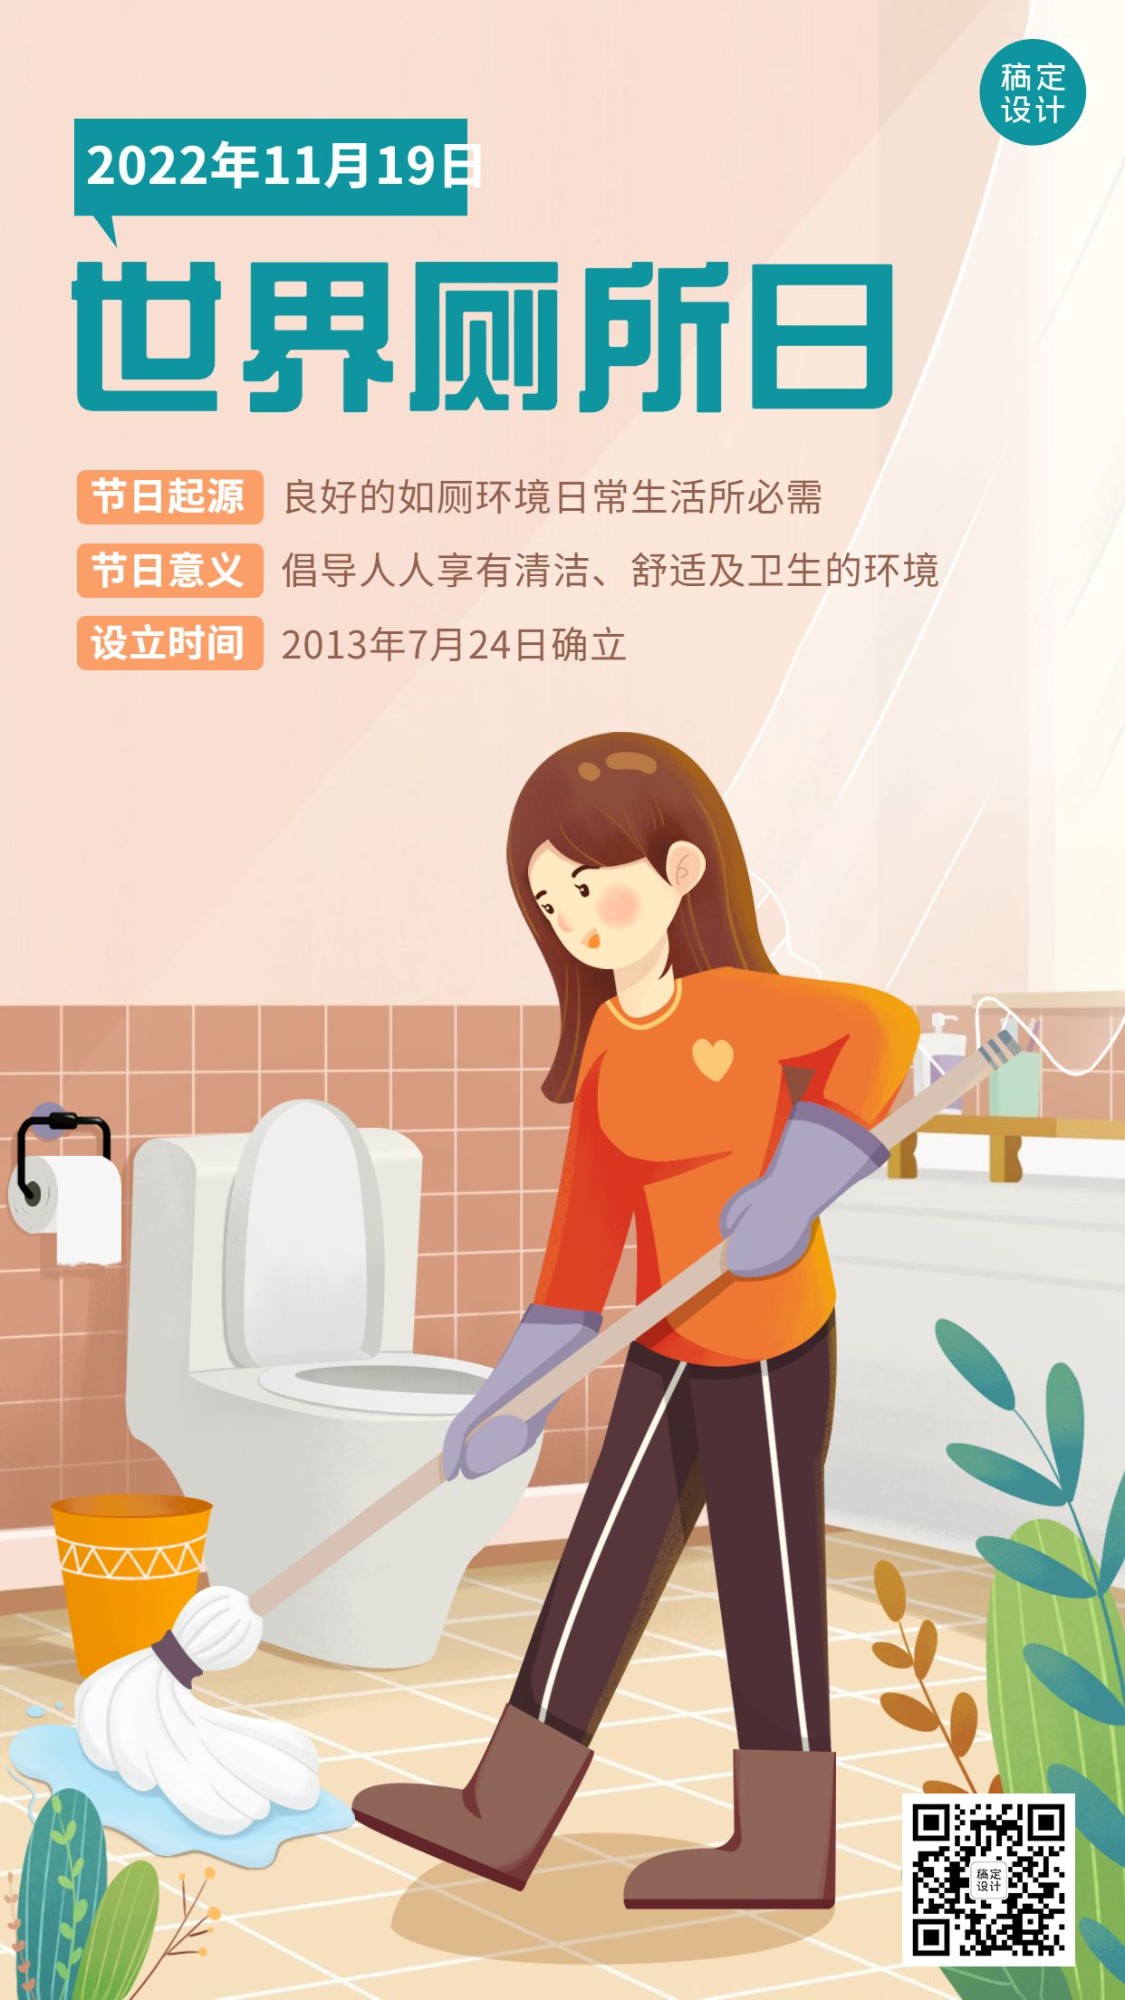 世界厕所日关注公共卫生健康宣传手绘插画手机海报